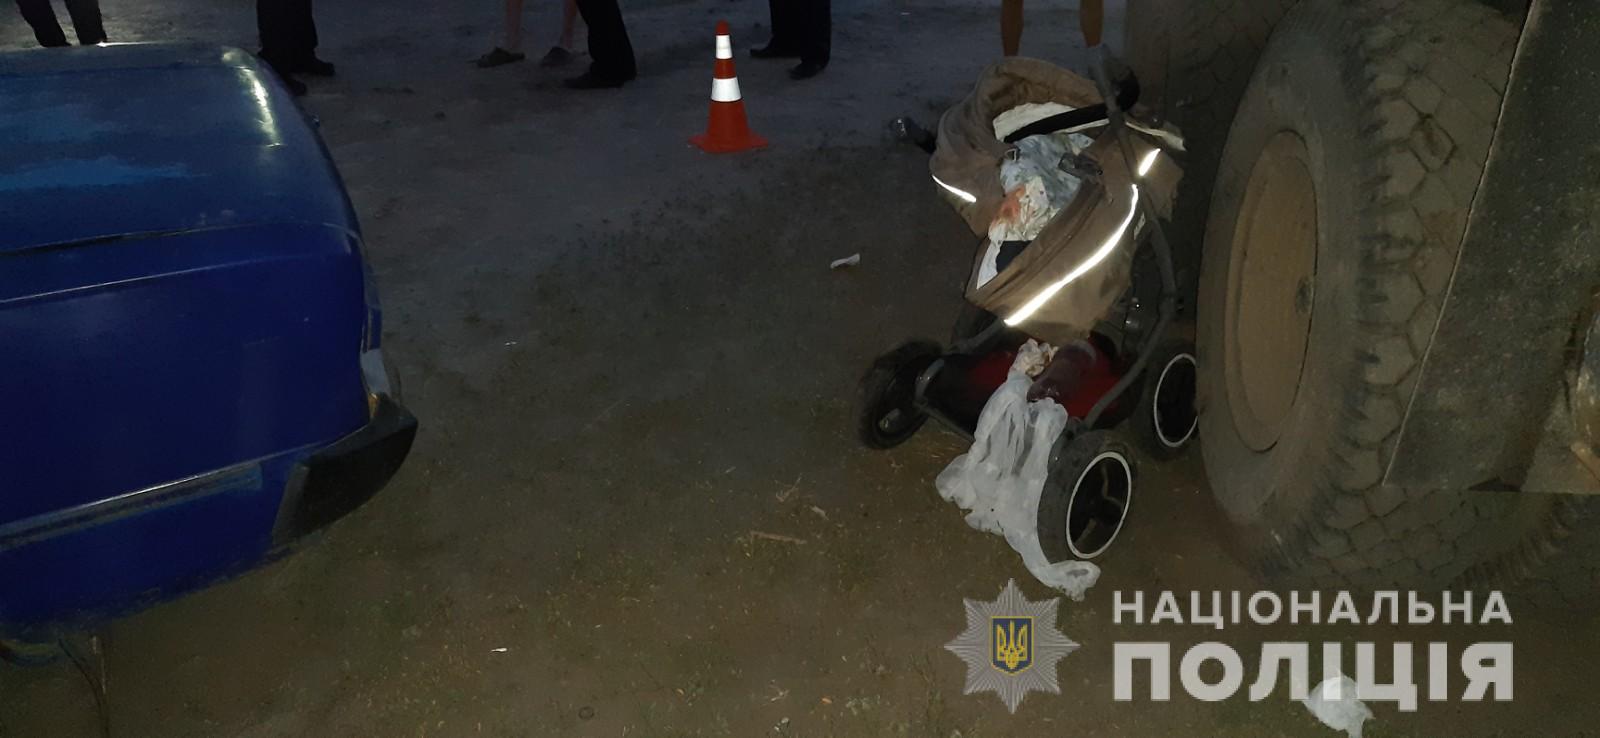 В Харькове водитель задавил новорожденную девочку в коляске. Фото: Нацполиция